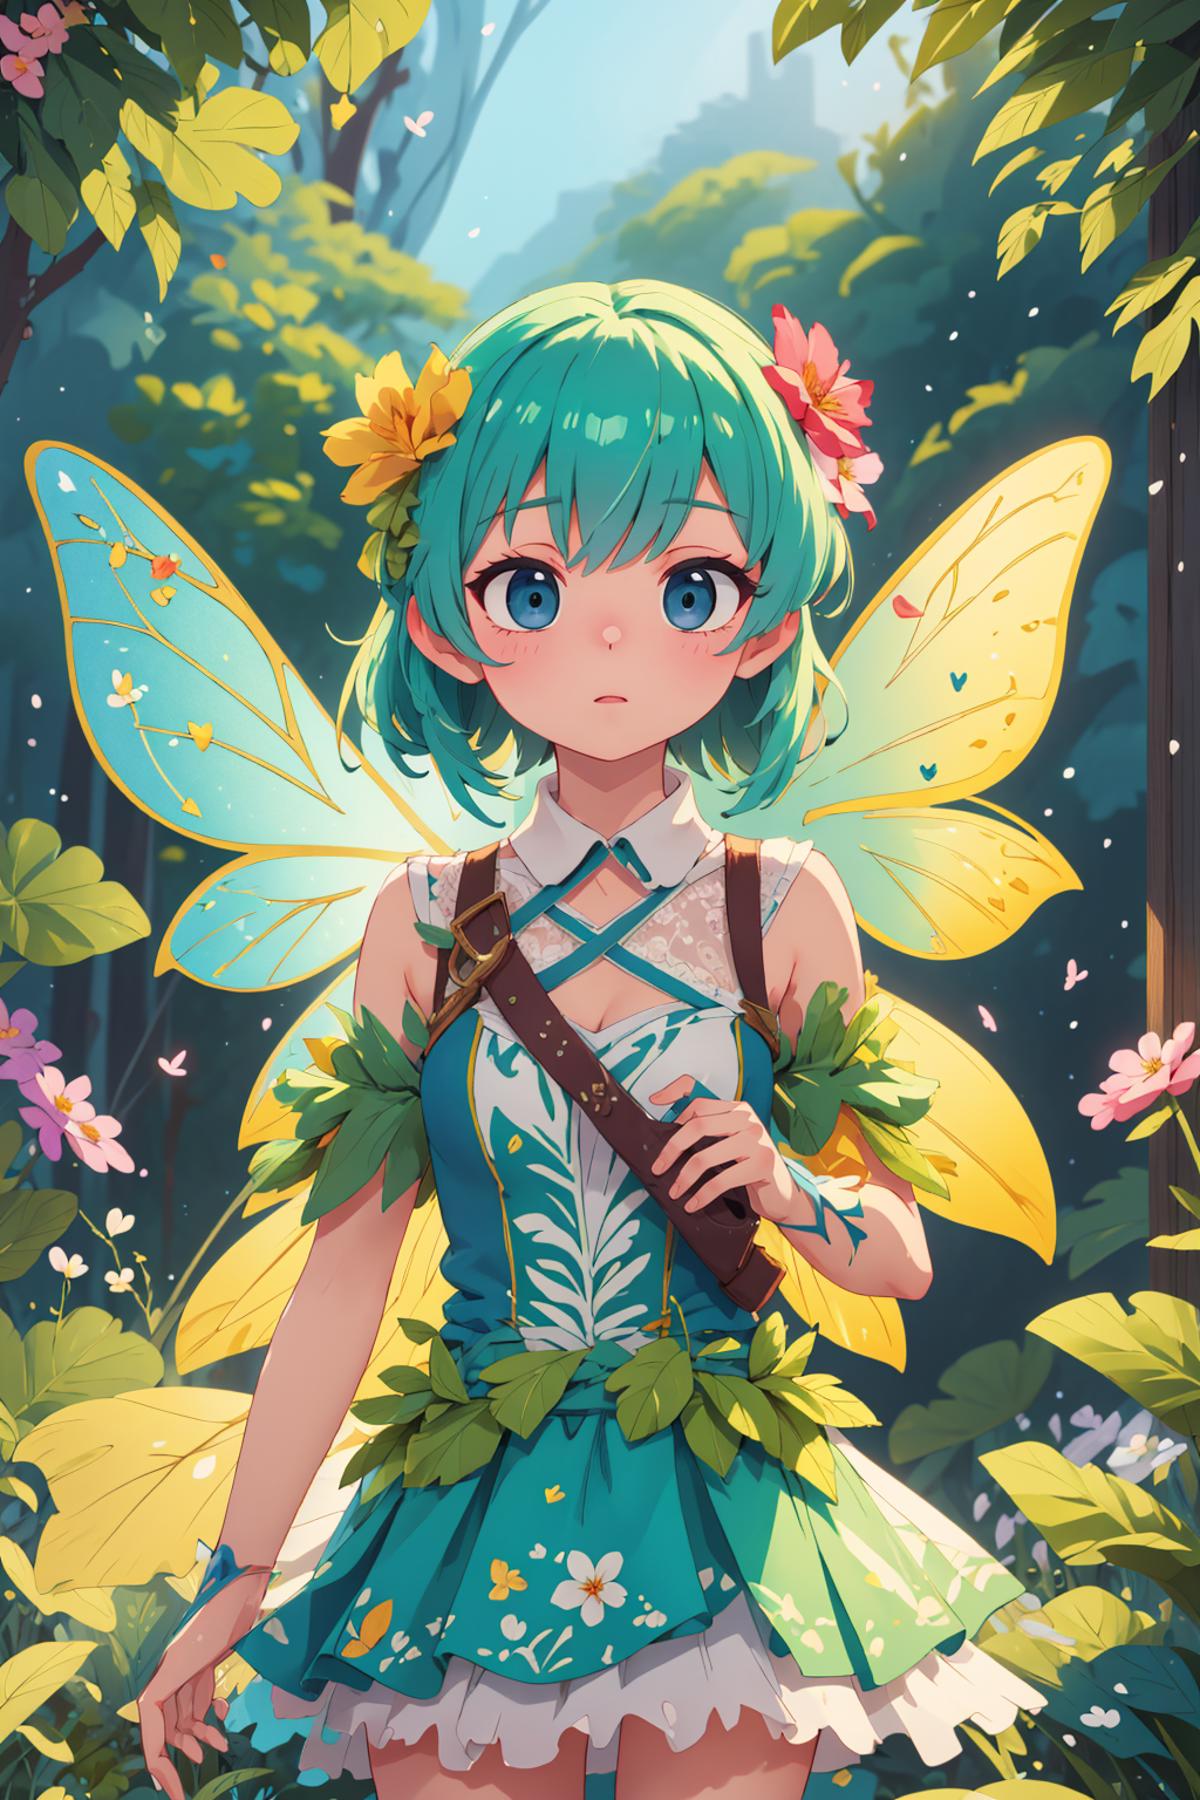 Fairy Dress image by Tokugawa